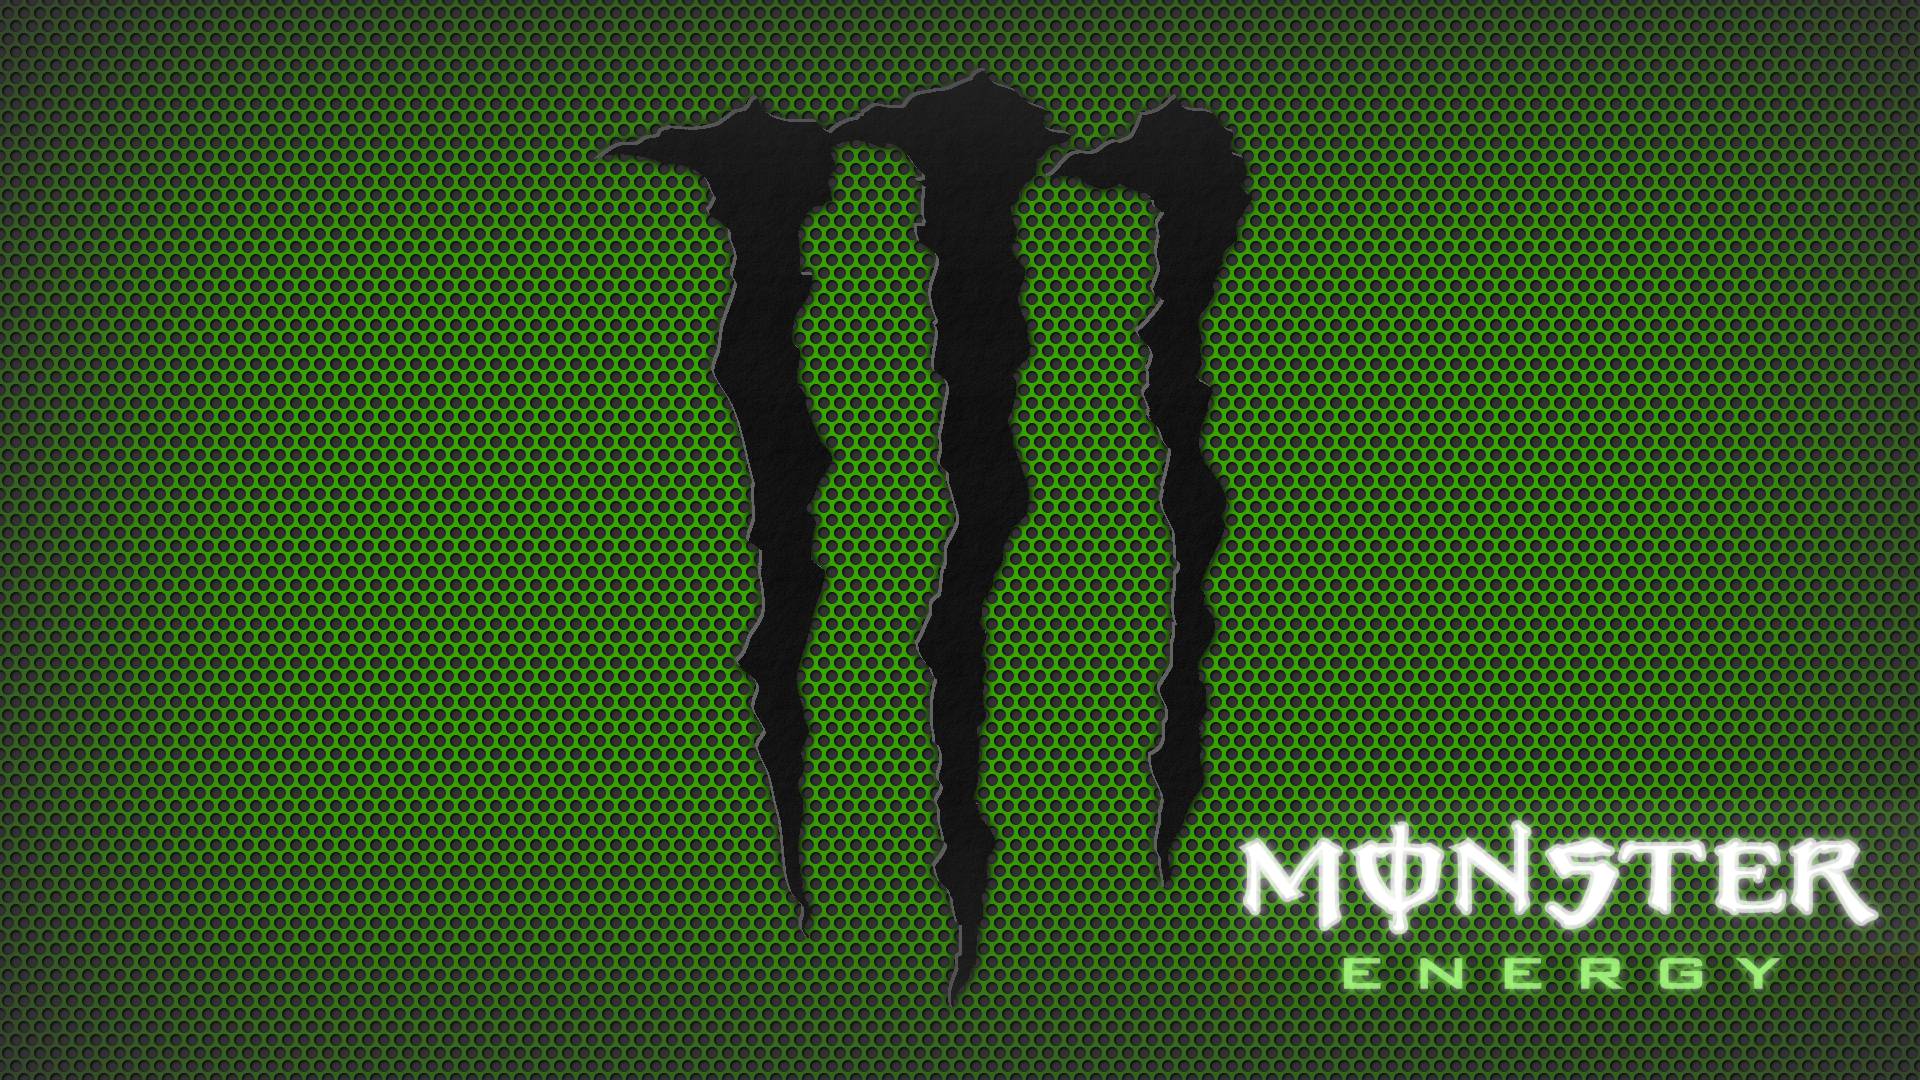 Monster Energy Wallpaper HD. Image Wallpaper